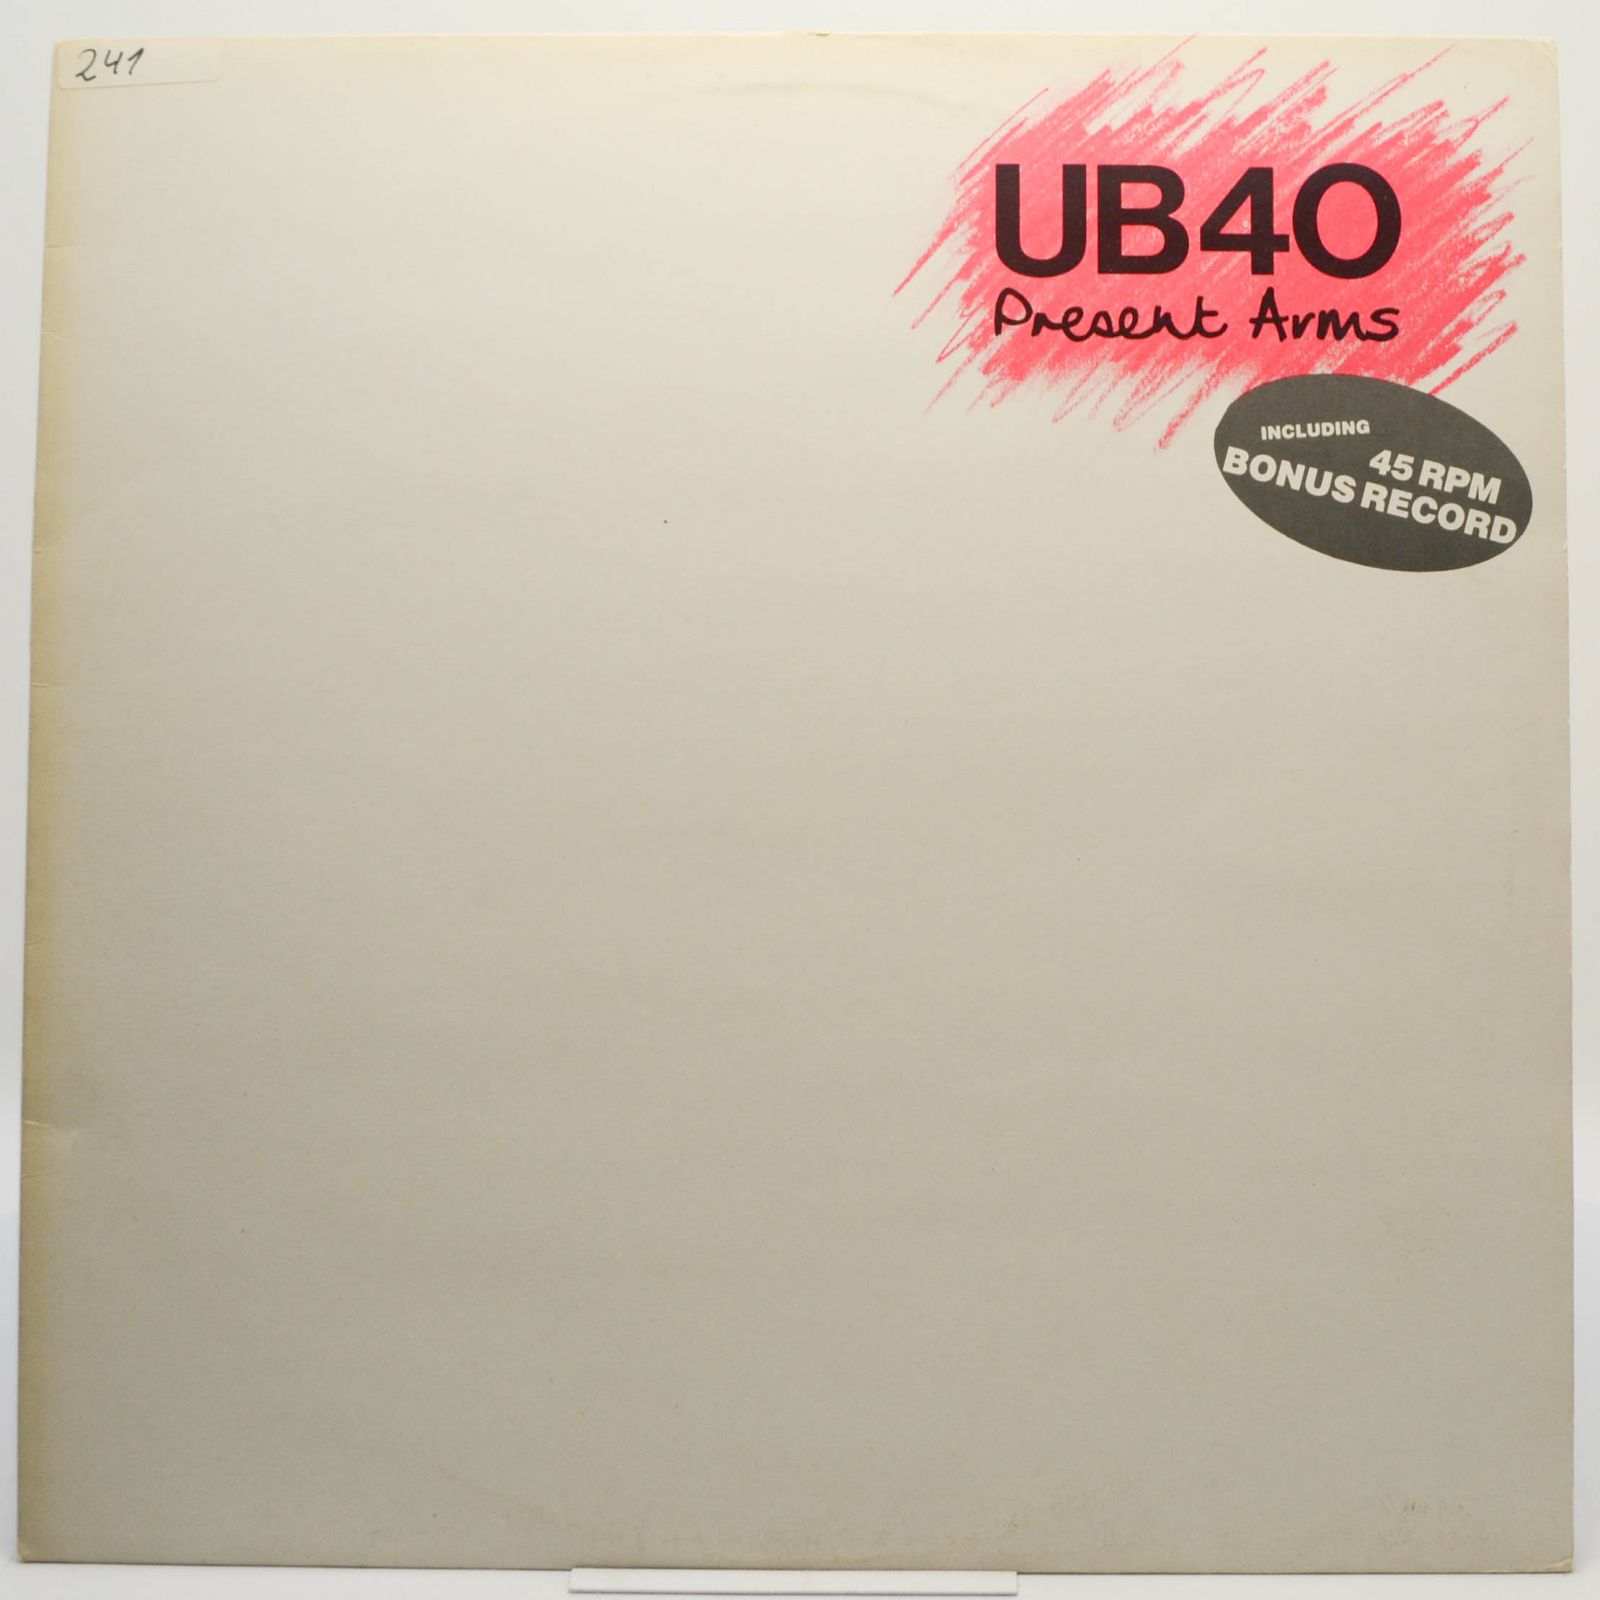 UB40 — Present Arms, 1981